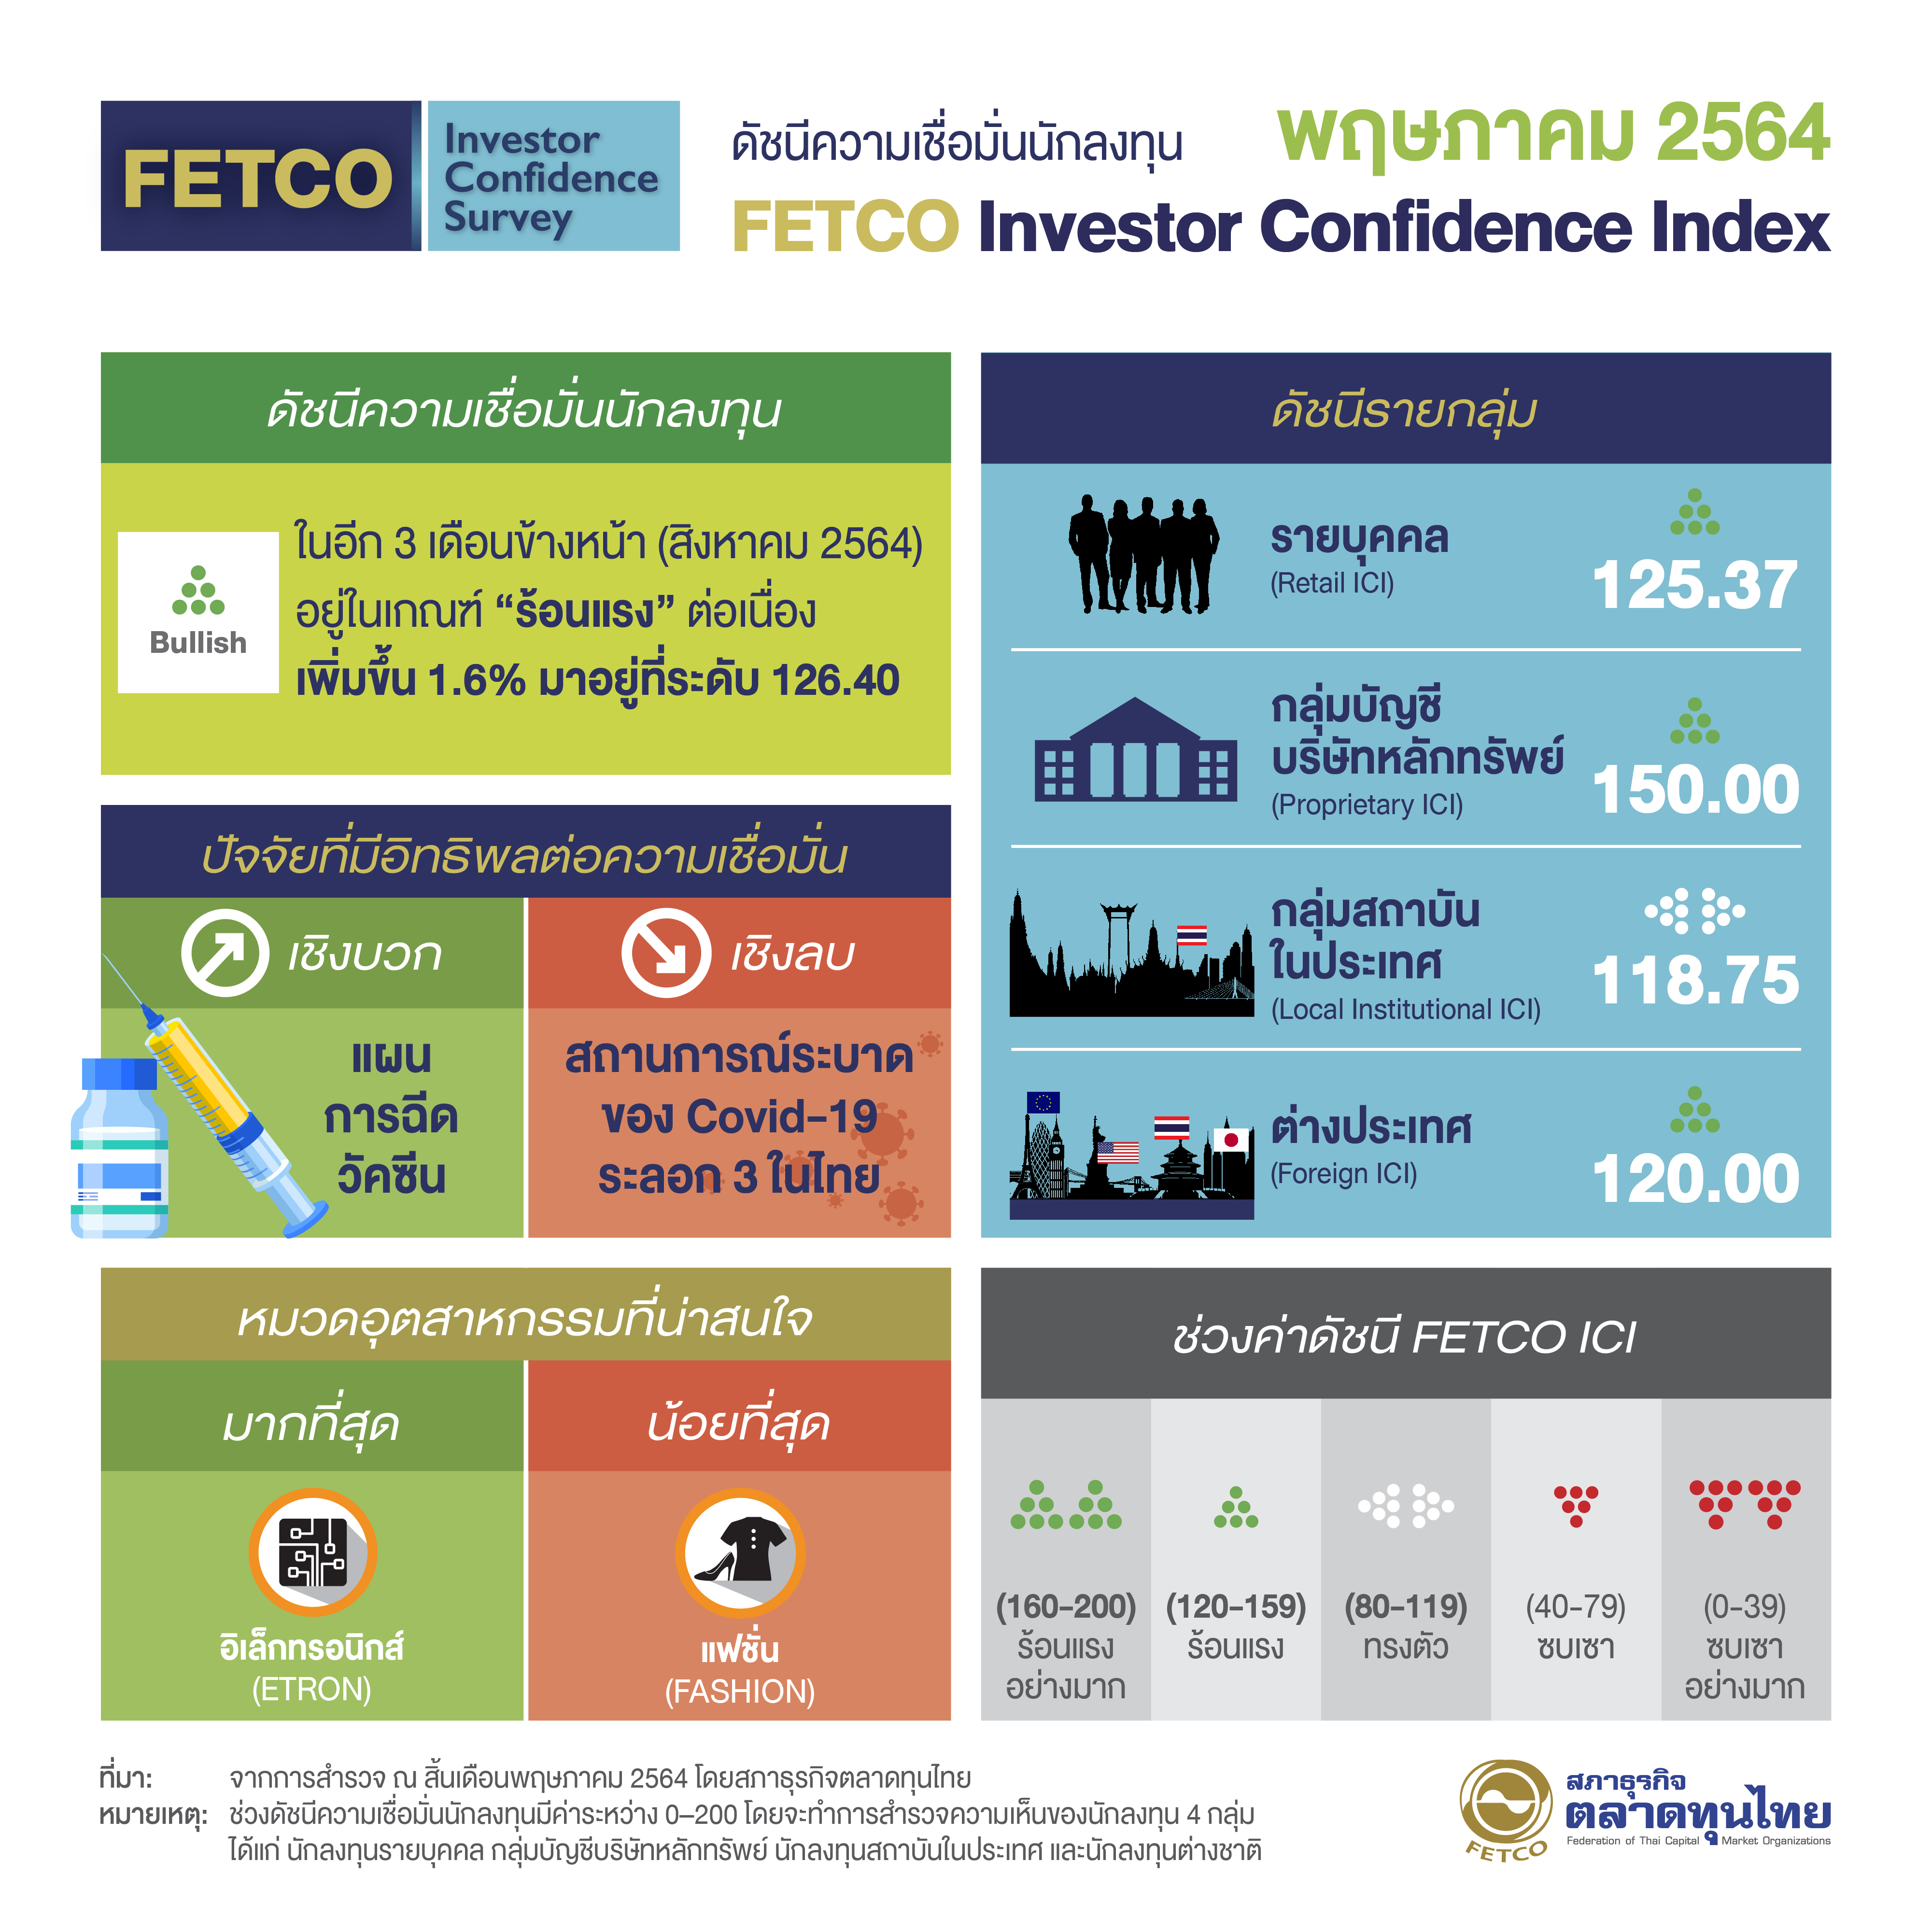   FETCO คาดหุ้นไทยร้อนแรง แผนกระจายวัคซีนหนุน